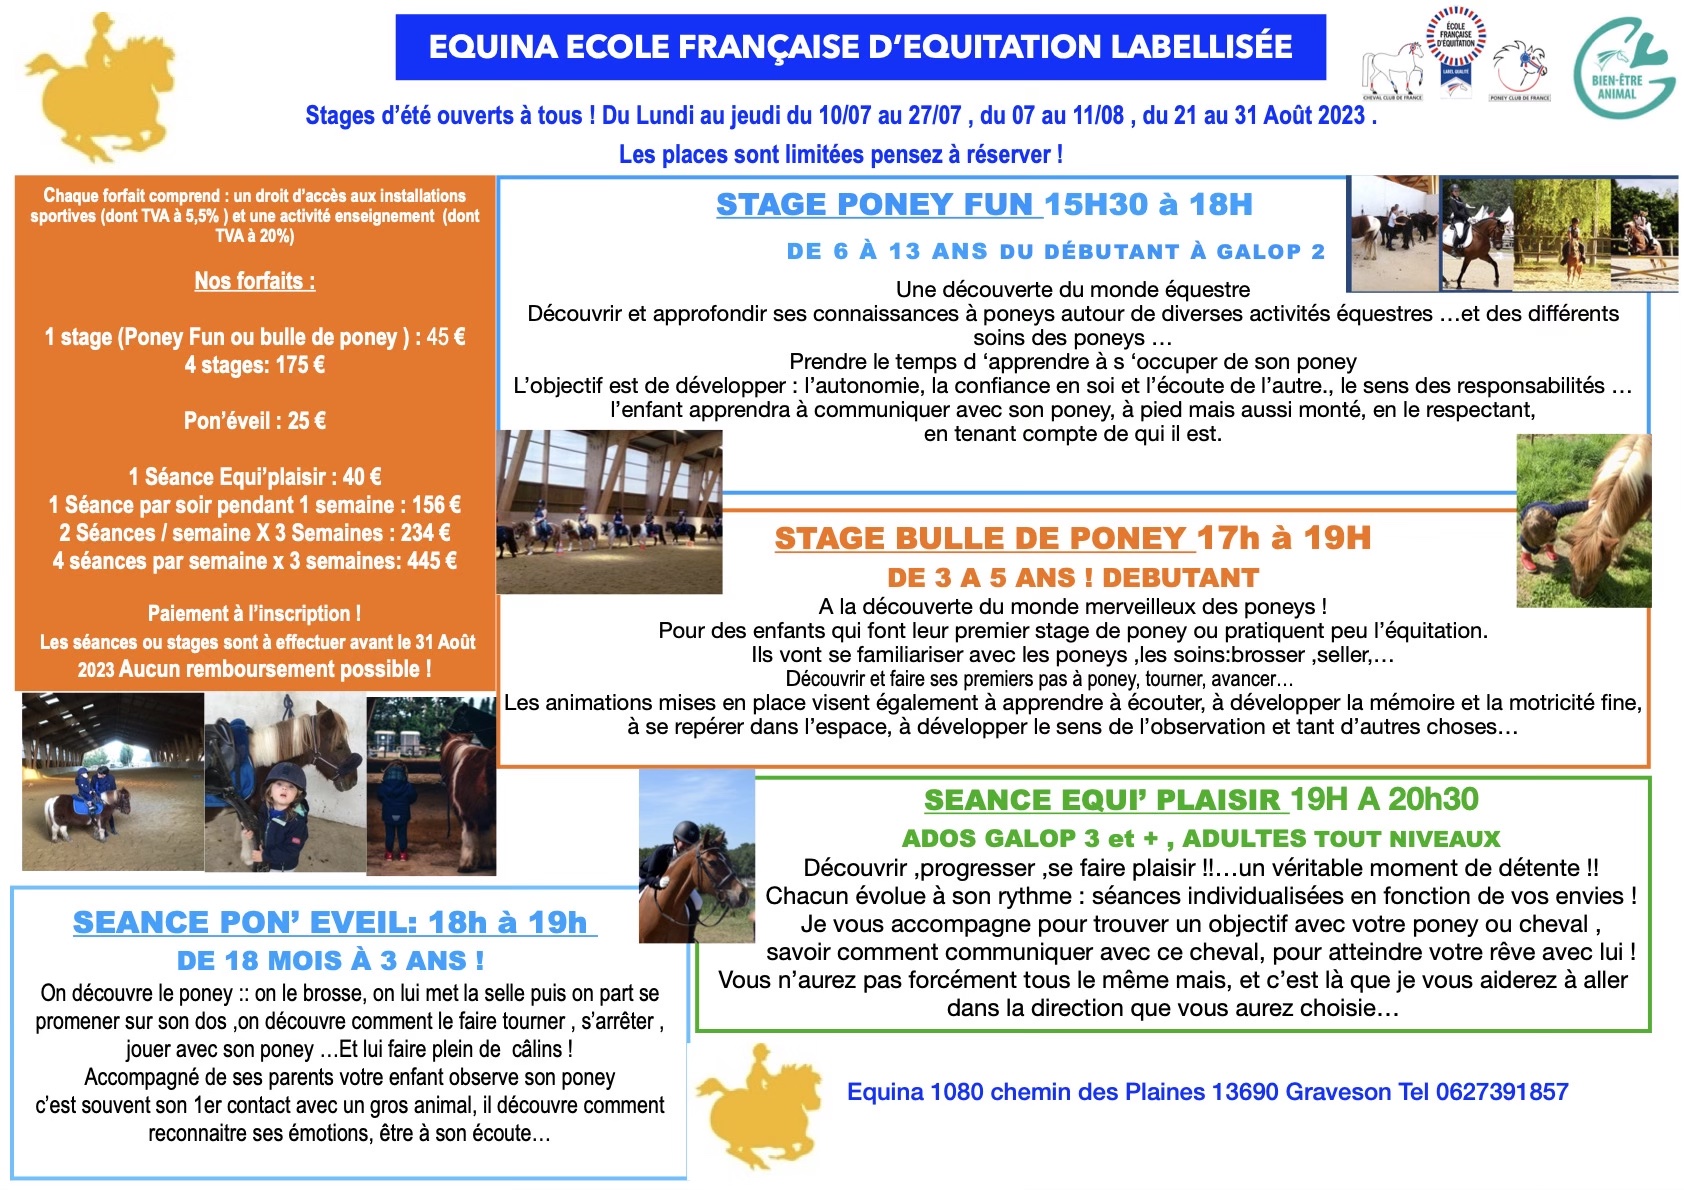 Un super été : des poneys ,de l'ombre ,du bonheur !!! Venez passer des superbes vacances au poney club Equina !!!